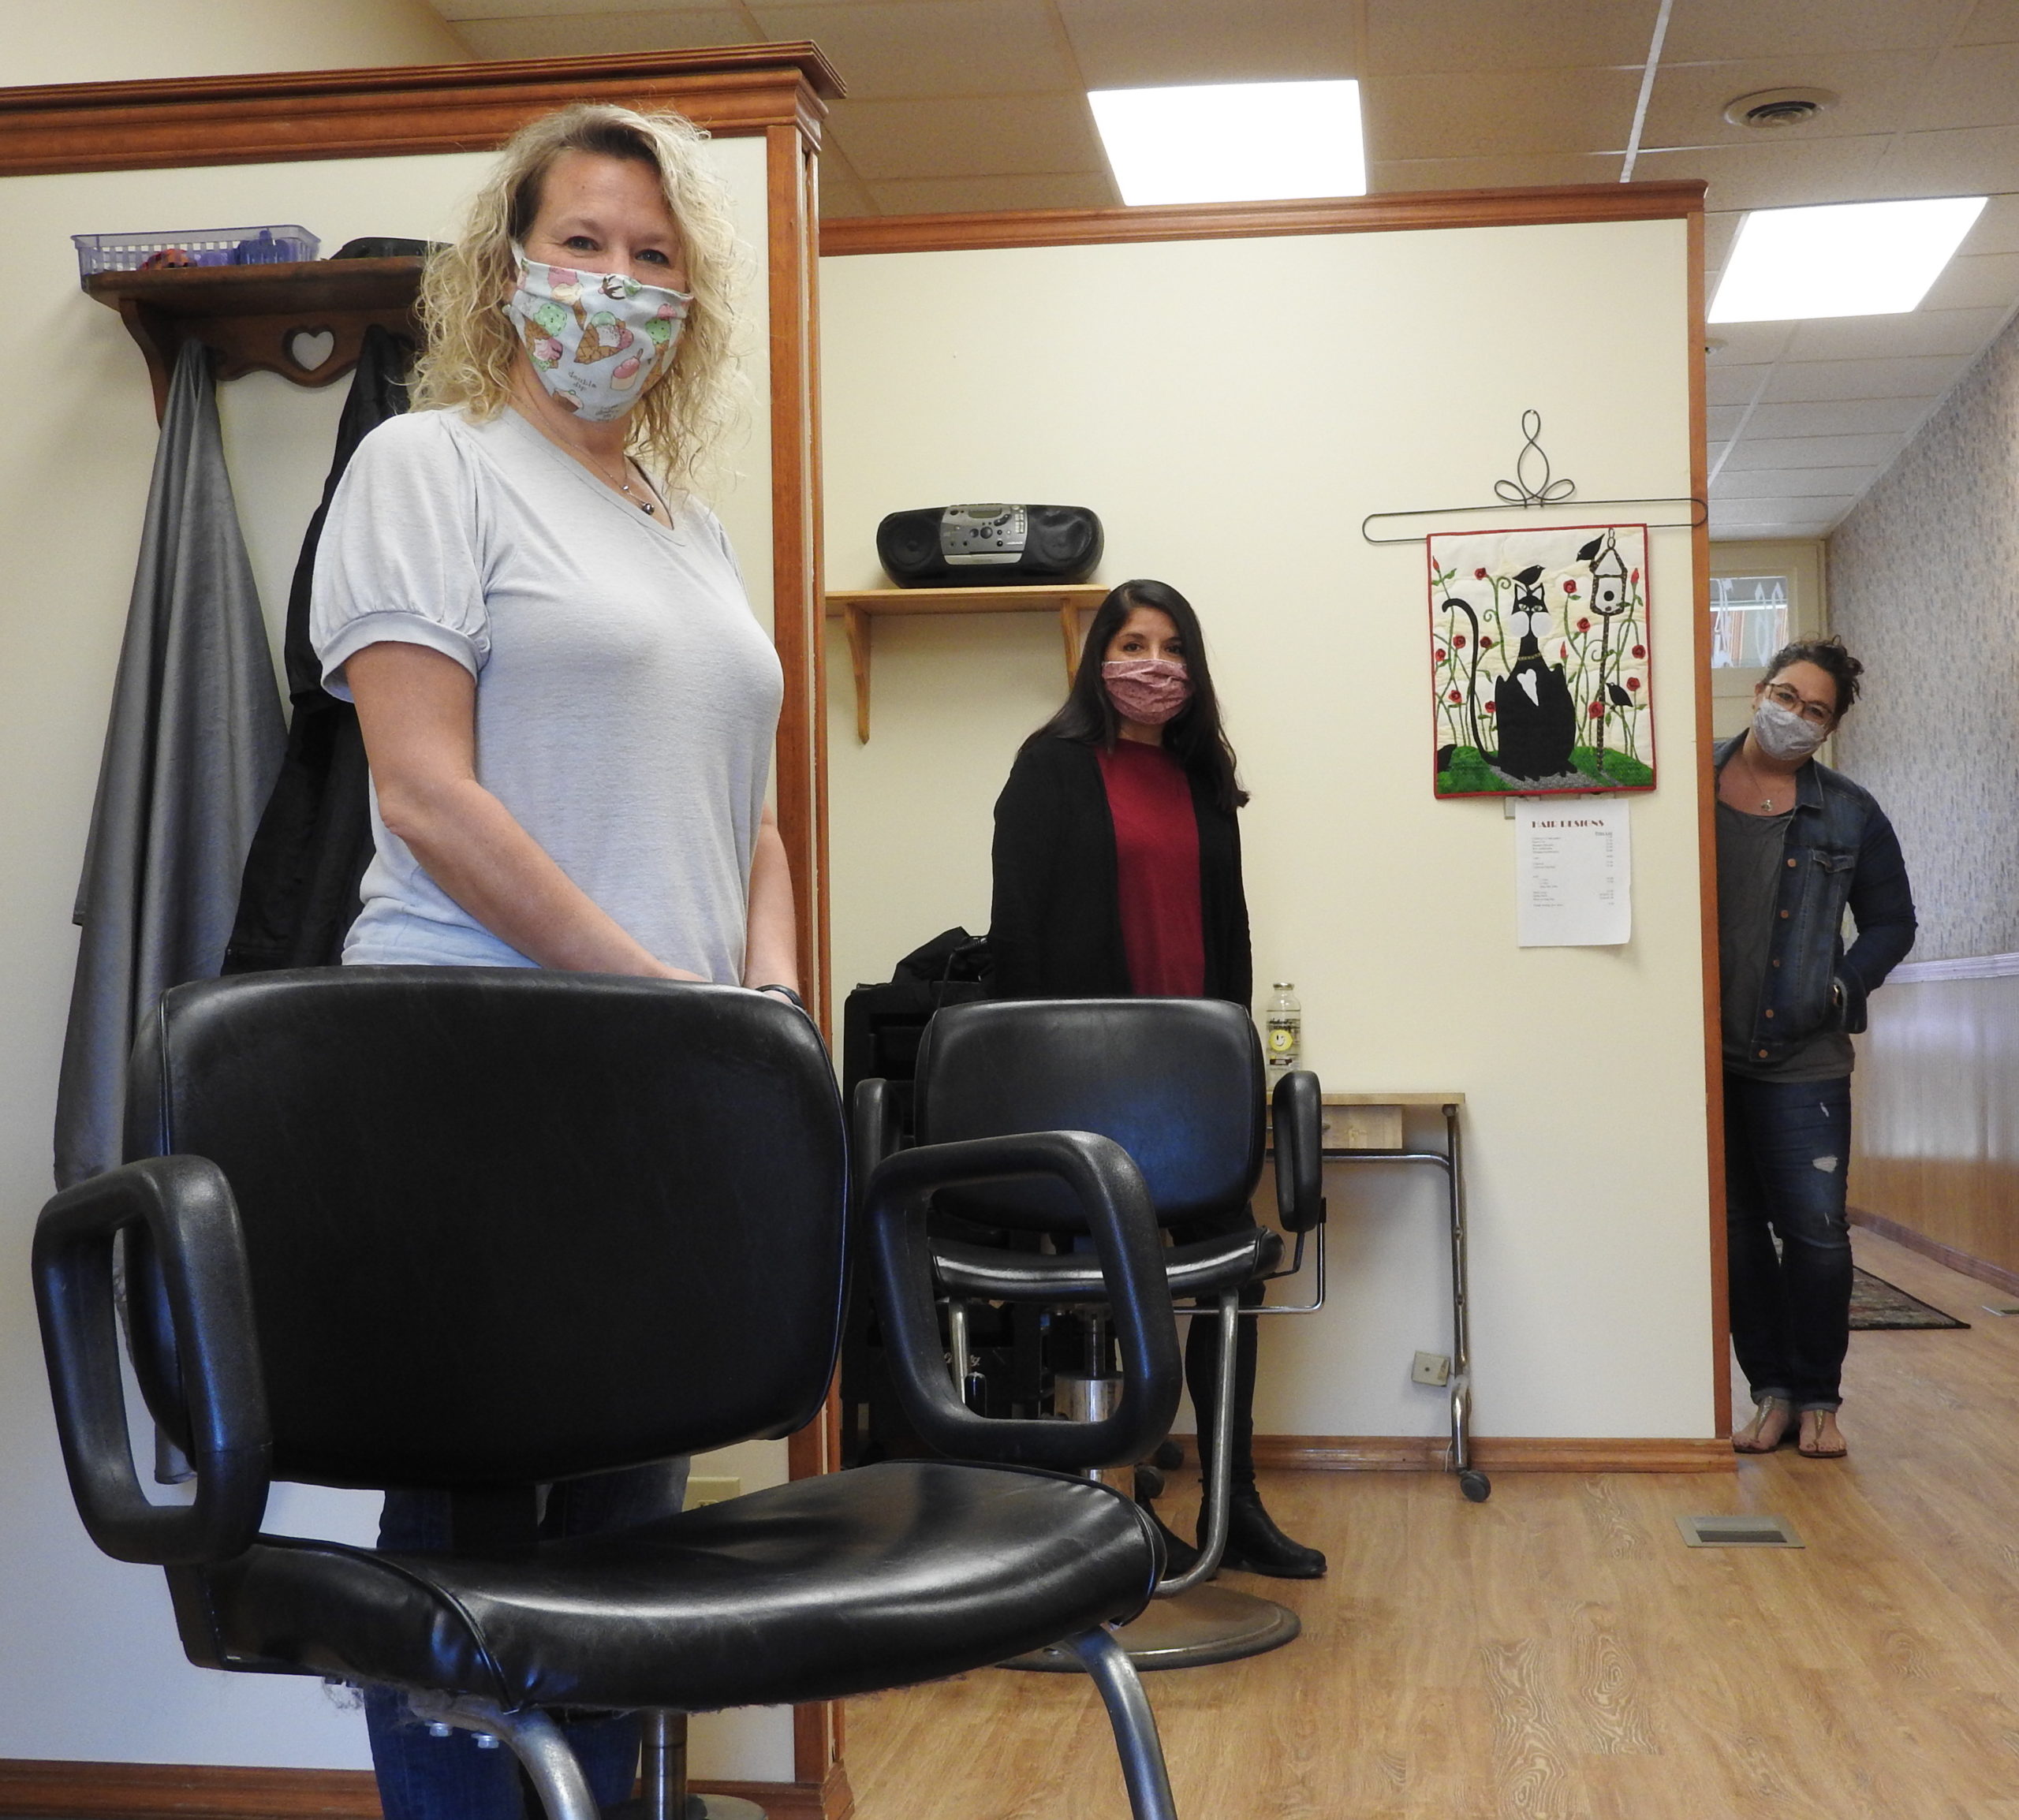 Hair stylist jobs in utah county